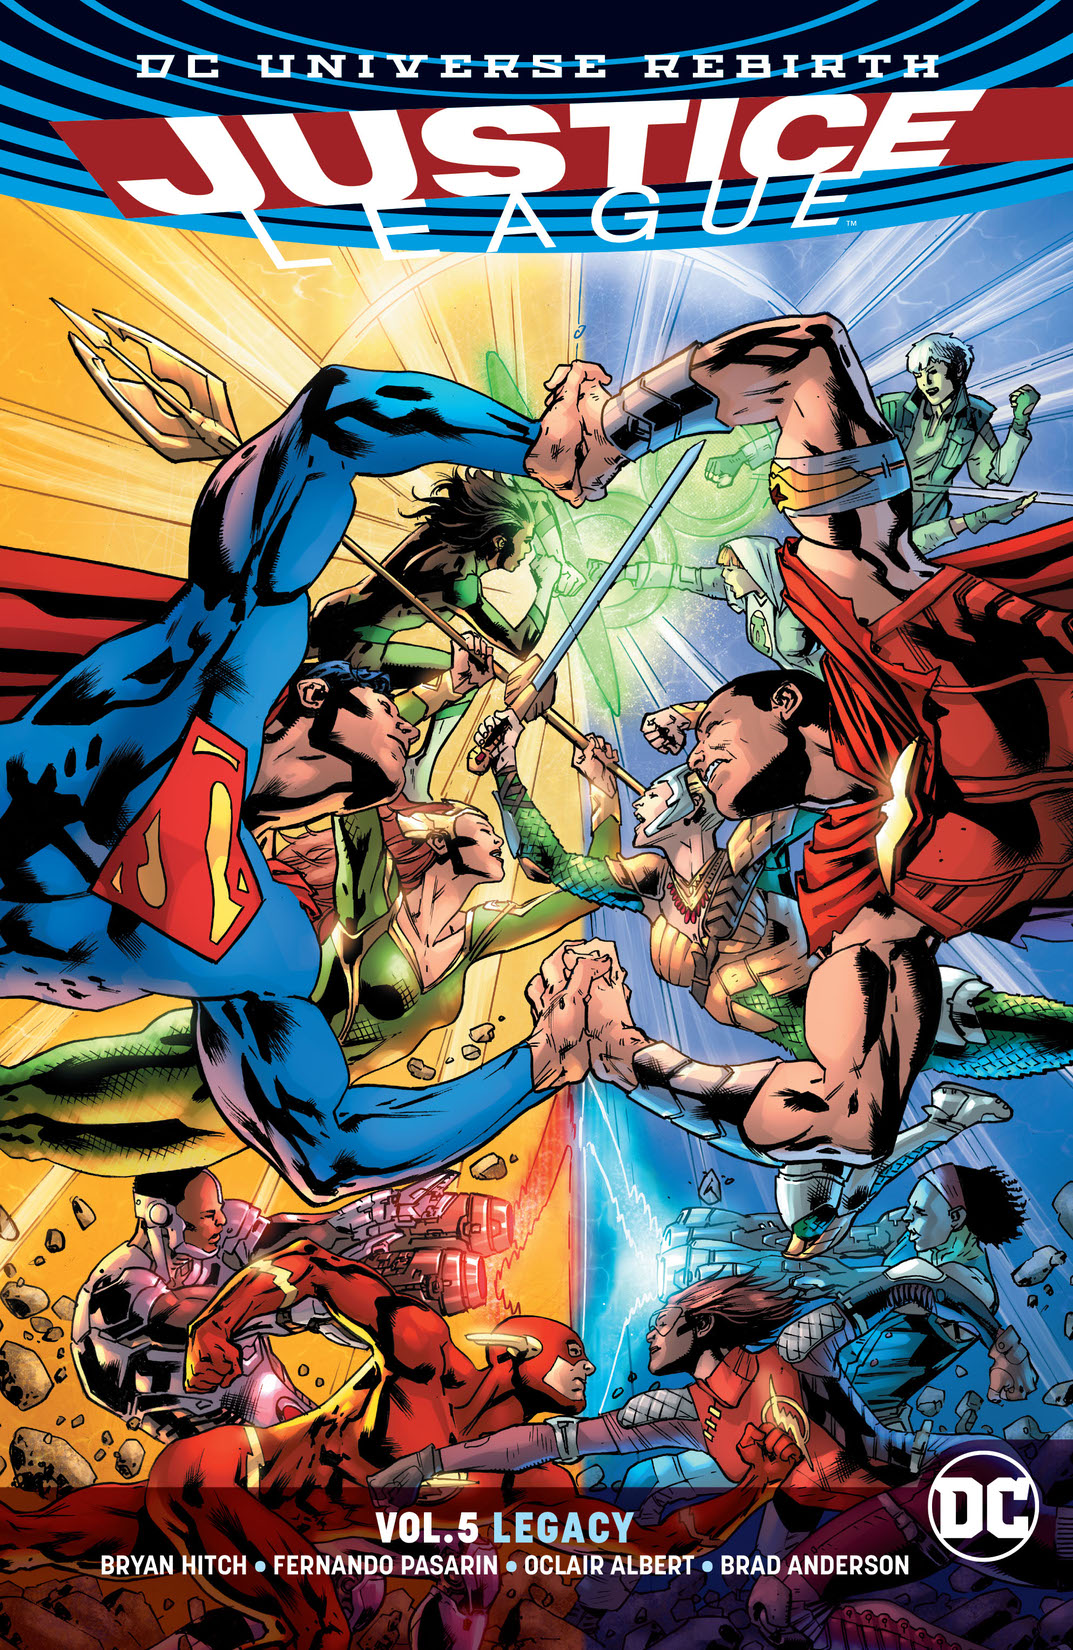 Justice League Vol. 5 preview images